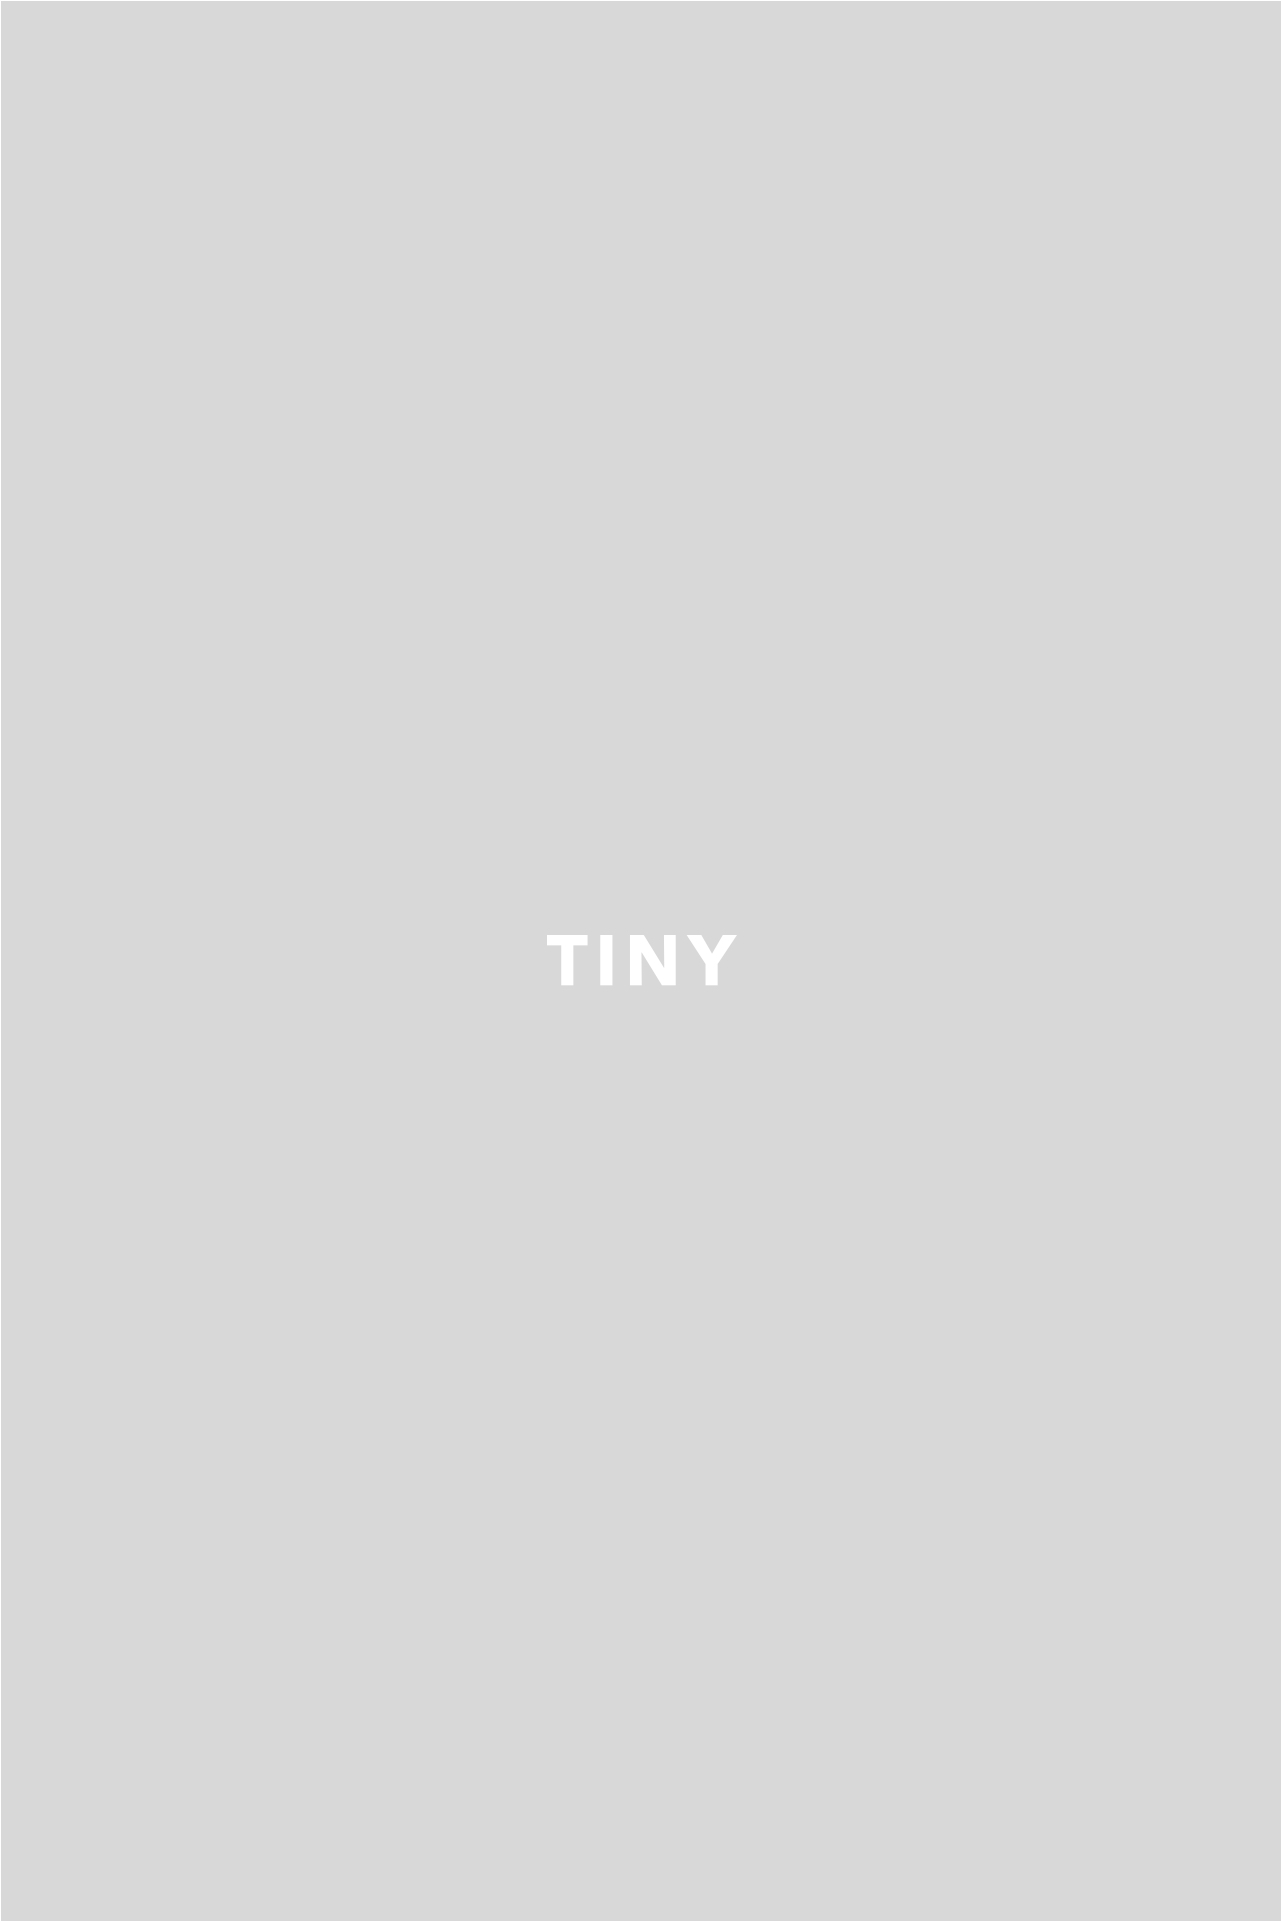 Tiny House - Animals